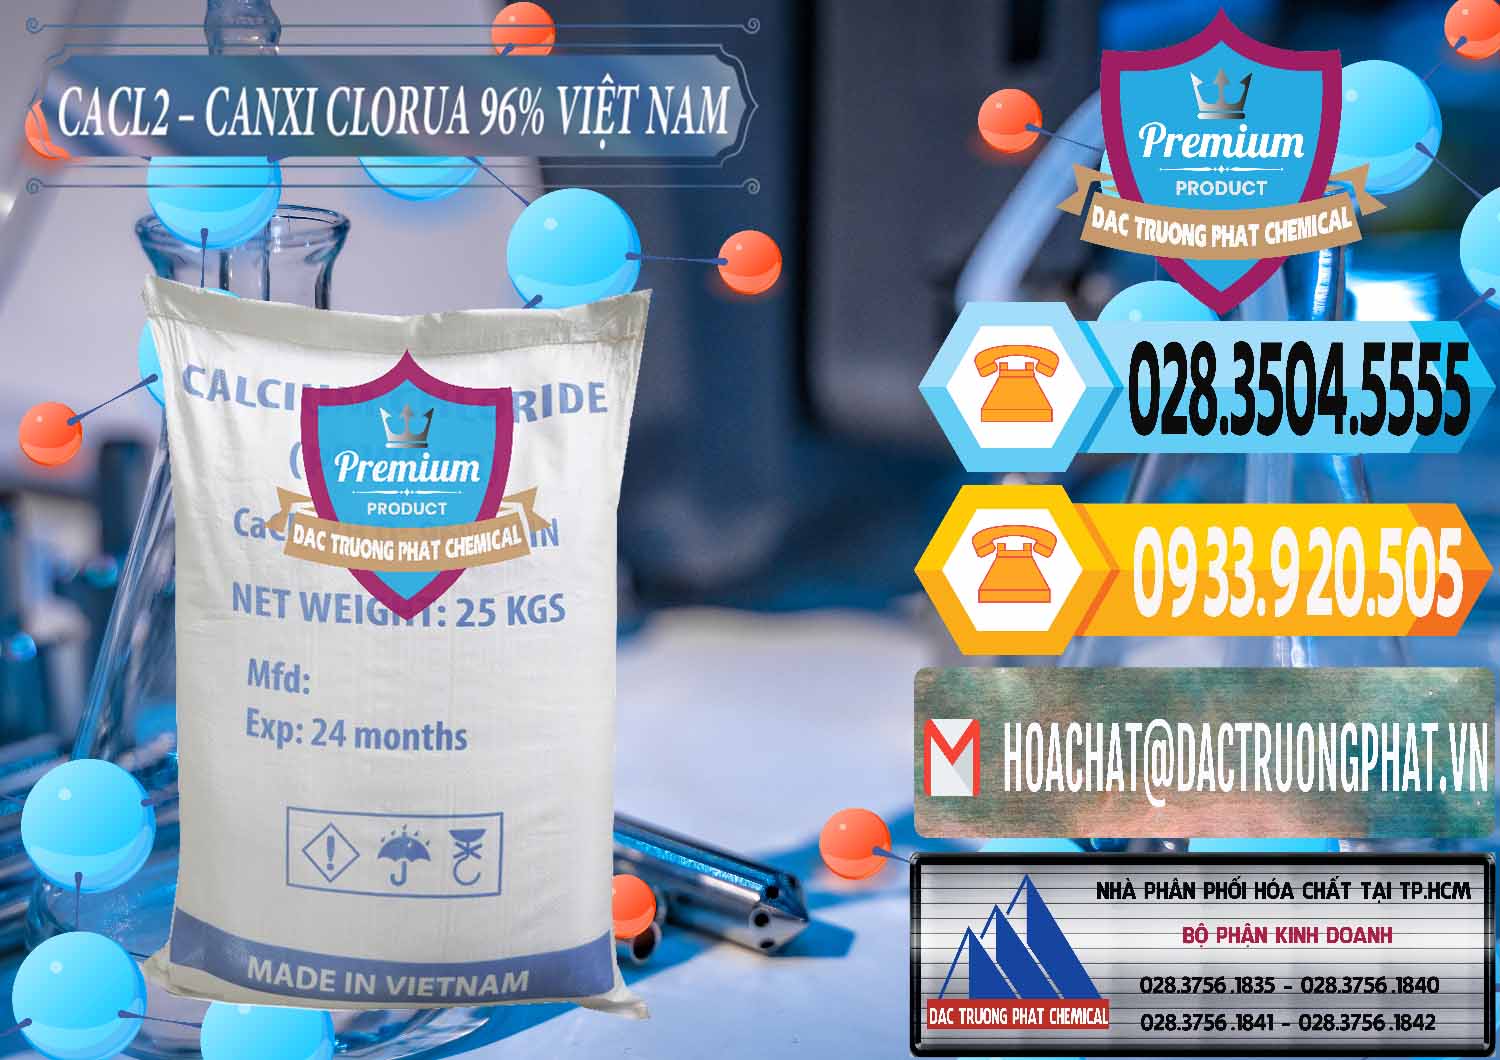 Chuyên phân phối _ kinh doanh CaCl2 – Canxi Clorua 96% Việt Nam - 0236 - Cty chuyên cung cấp _ kinh doanh hóa chất tại TP.HCM - hoachattayrua.net